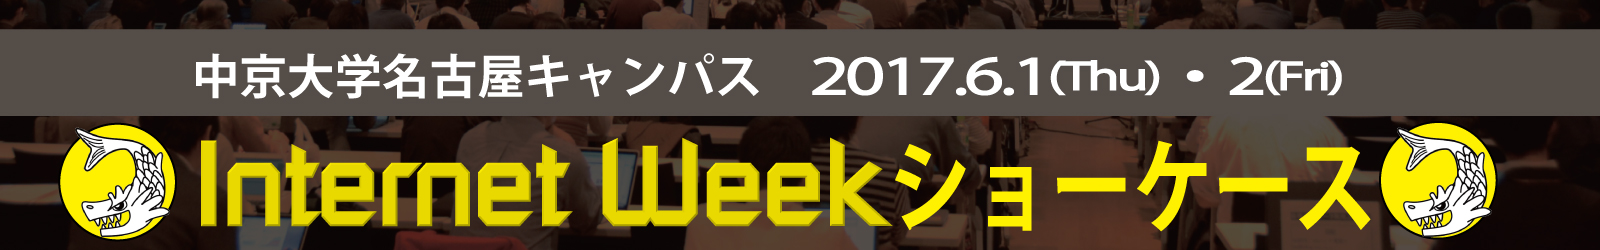 Internet Week ショーケース in 名古屋